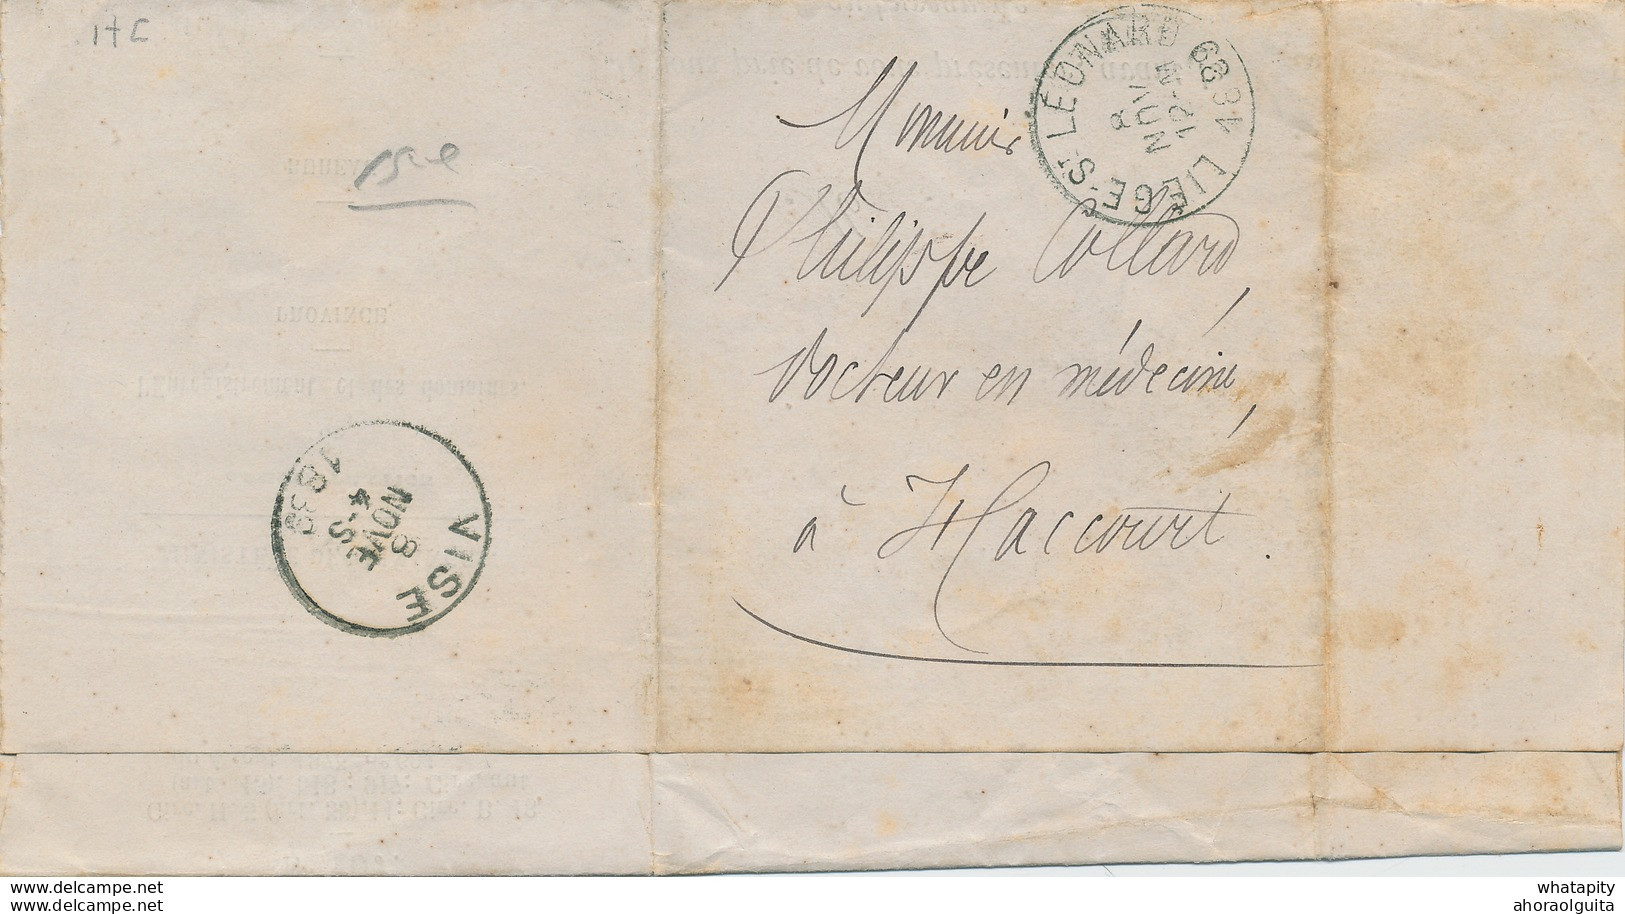 ZZ864 - Lettre De Service En FRANCHISE LIEGE ST LEONARD 1889 Vers HACCOURT Par VISE - Ministère Des Finances - Franchise